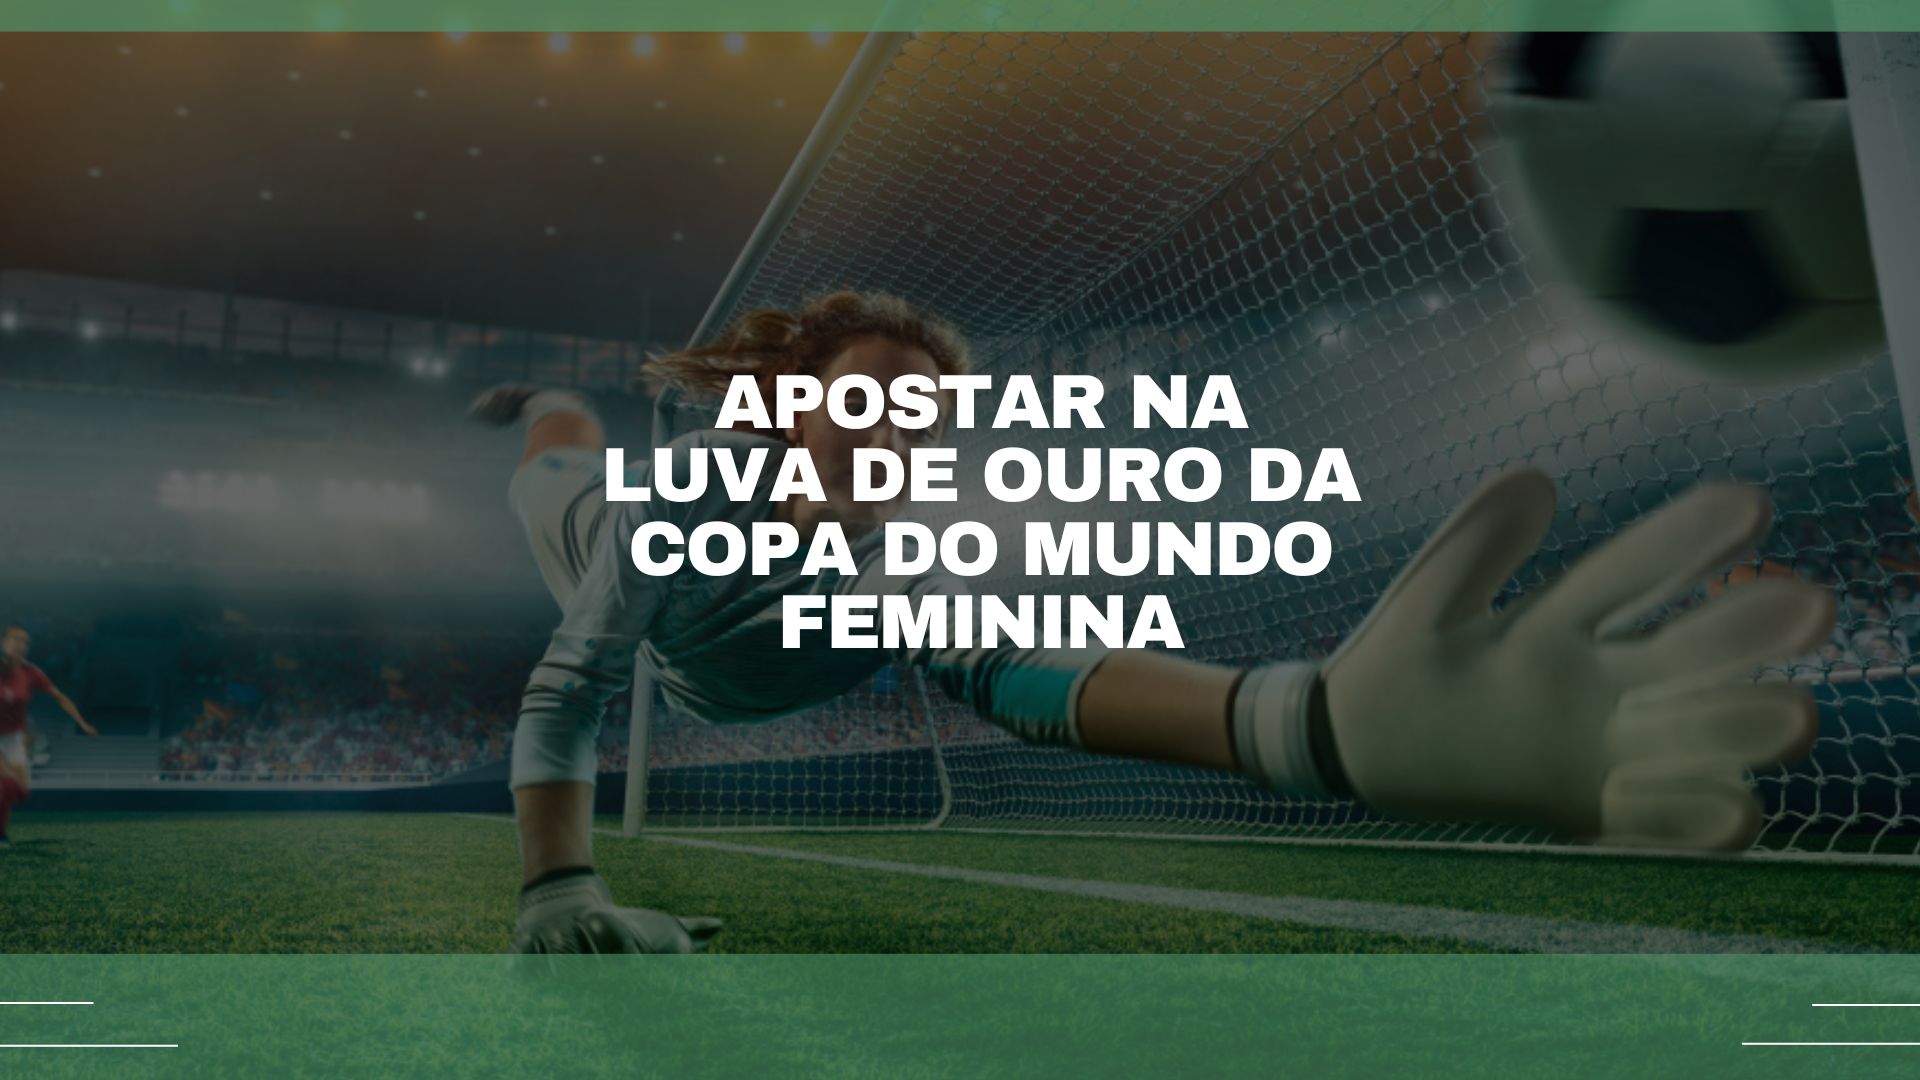 Atleta piauiense conquista Bola de Ouro do Brasileirão Feminino